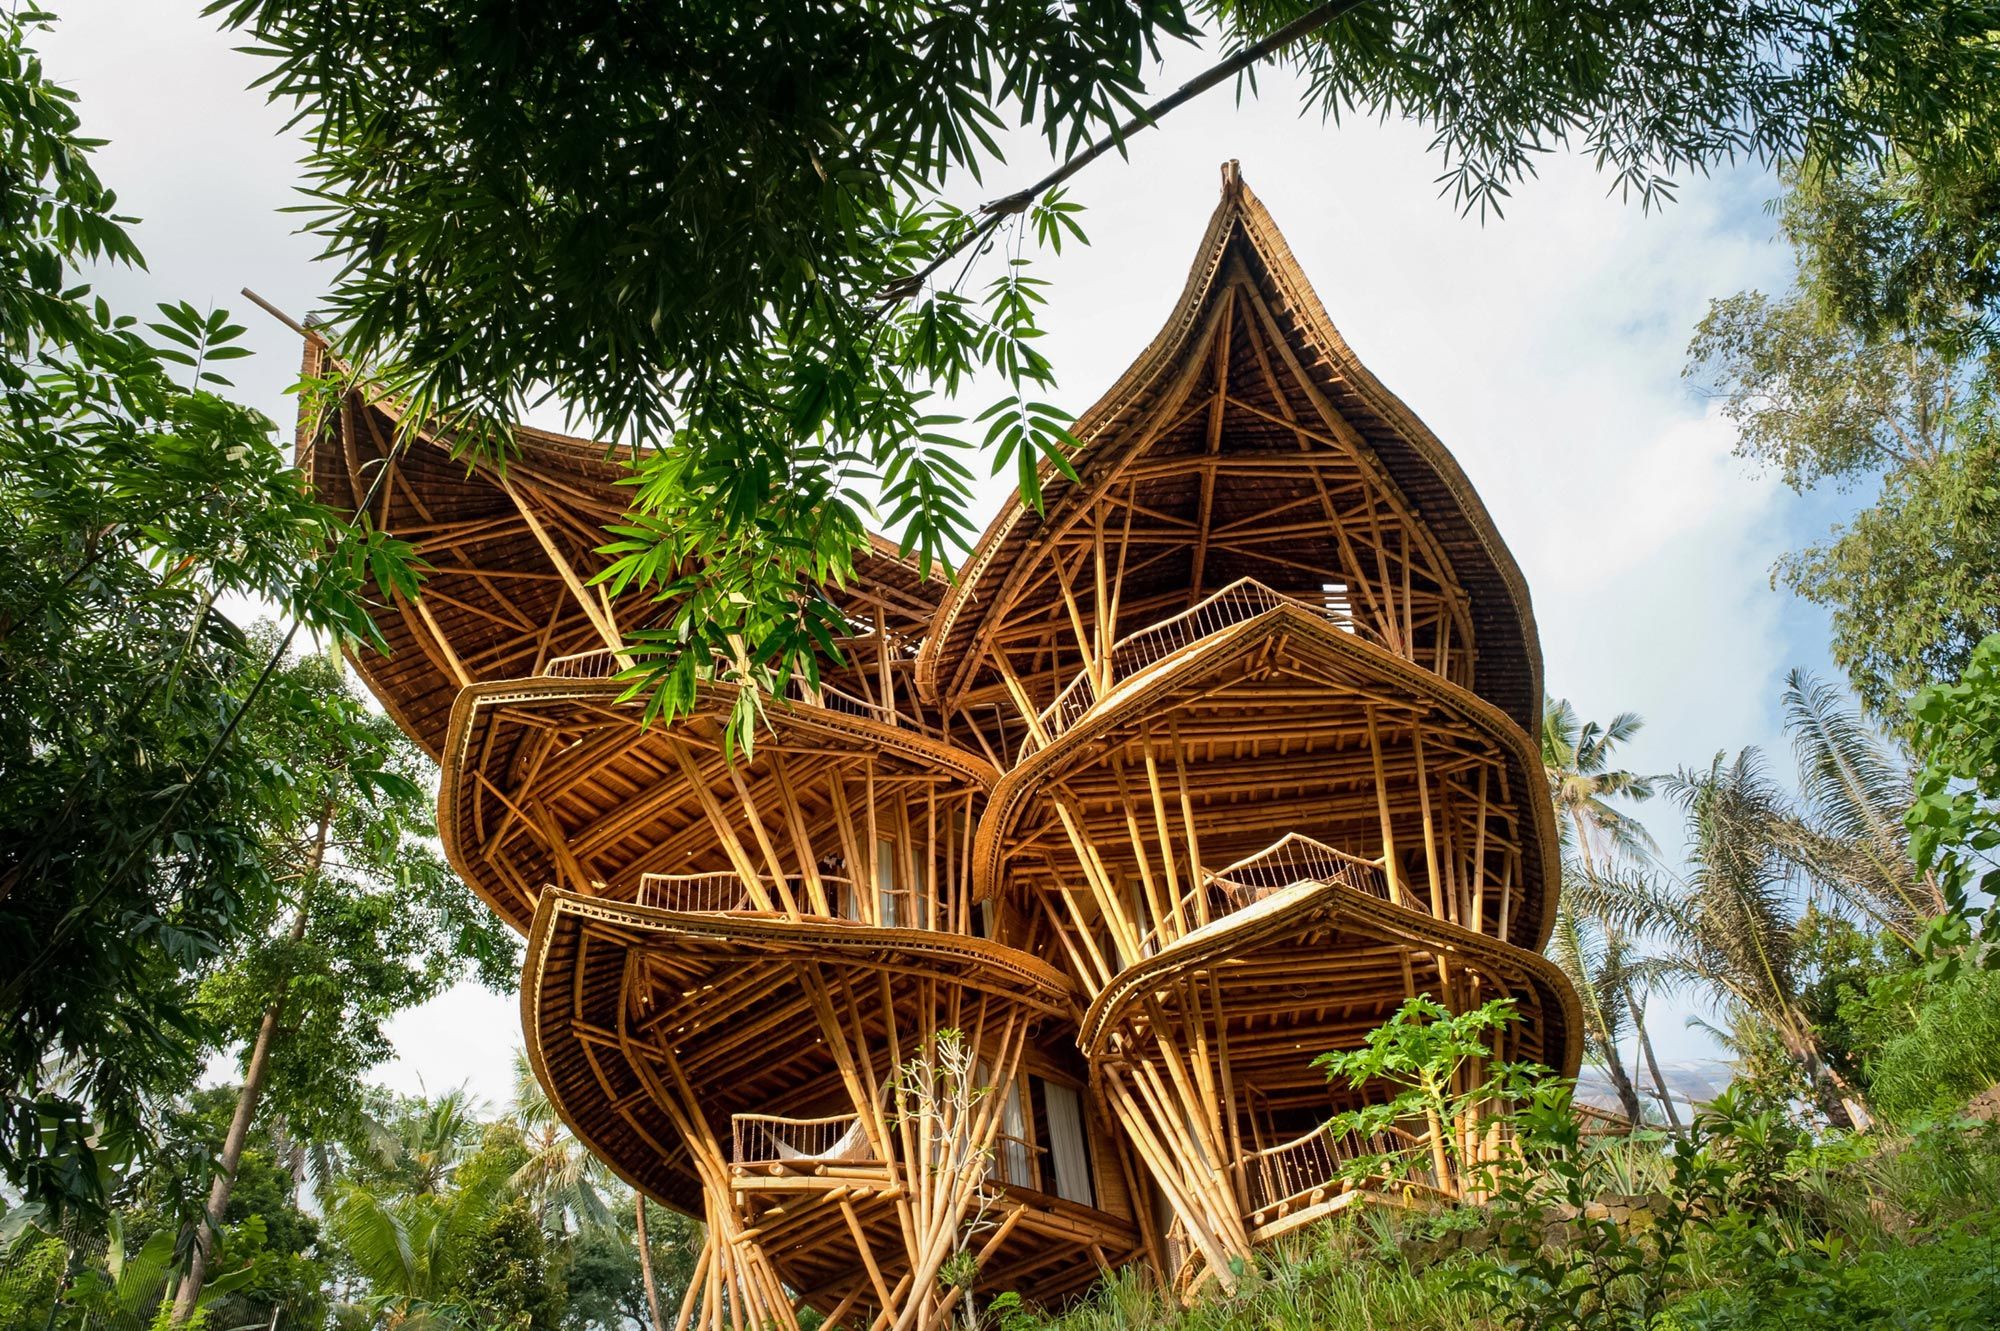 Bamboo structure designed by IBUKU